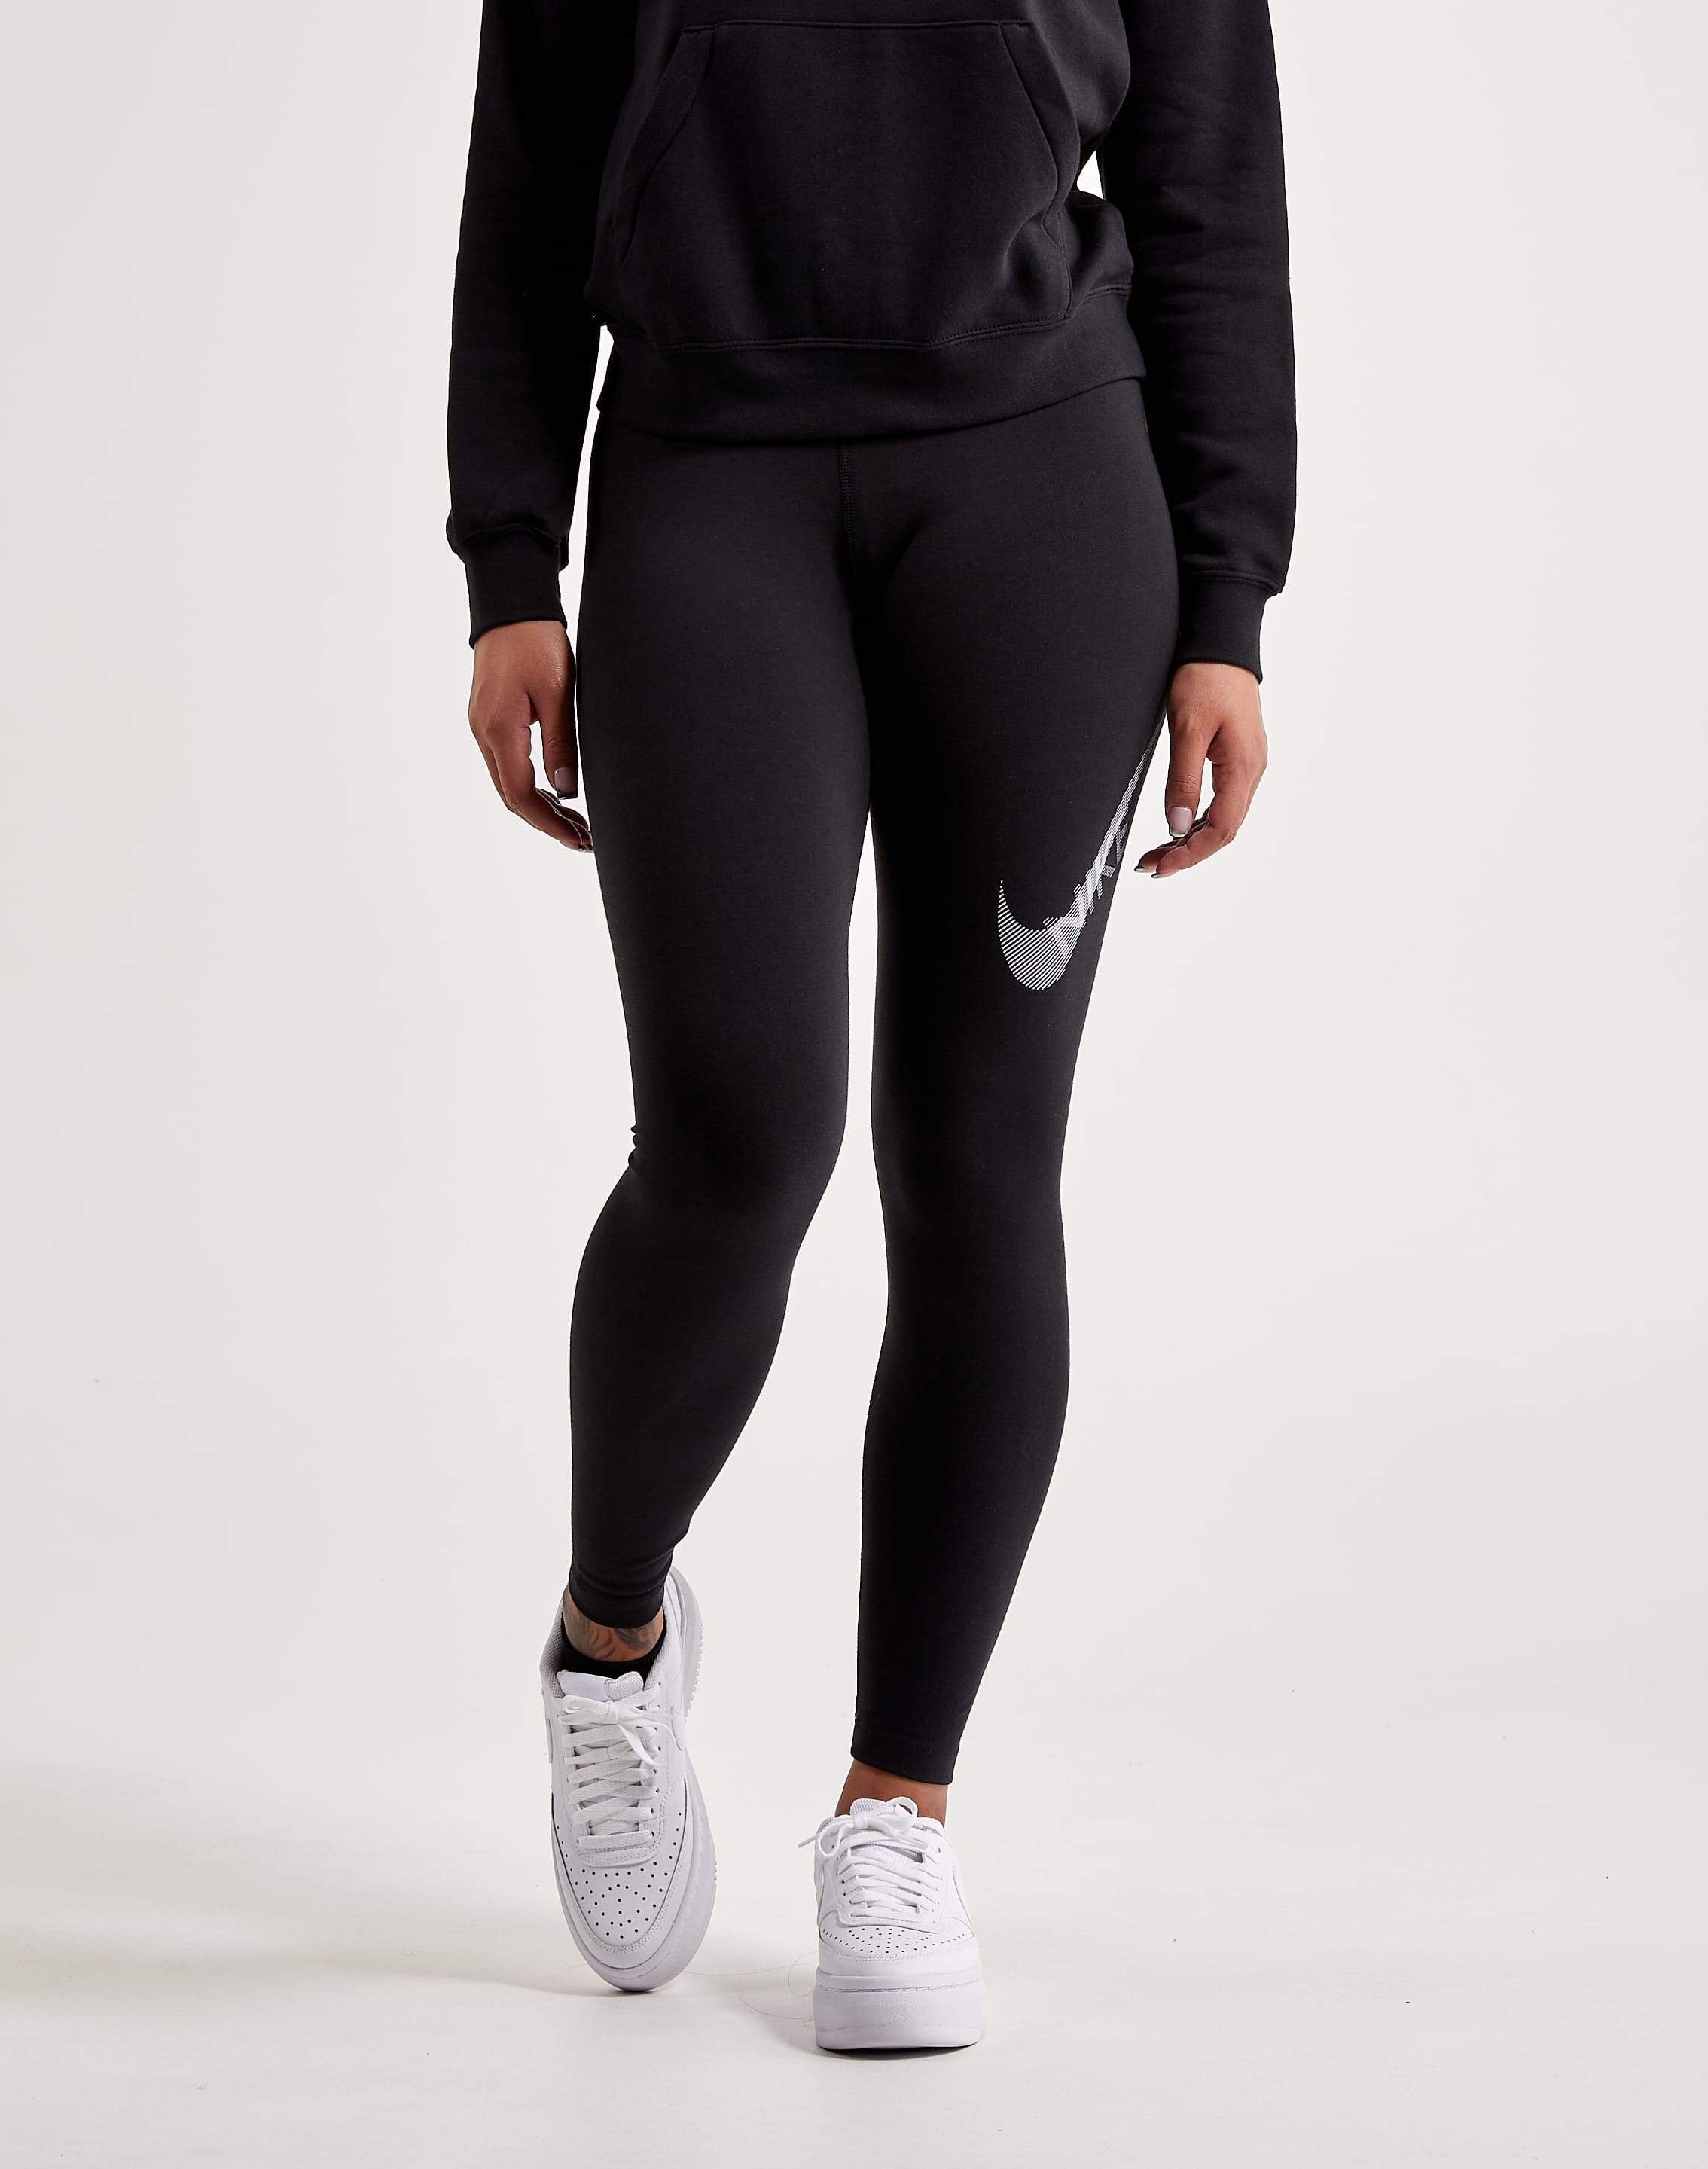 Sale | Women - Leggings - JD Sports UK